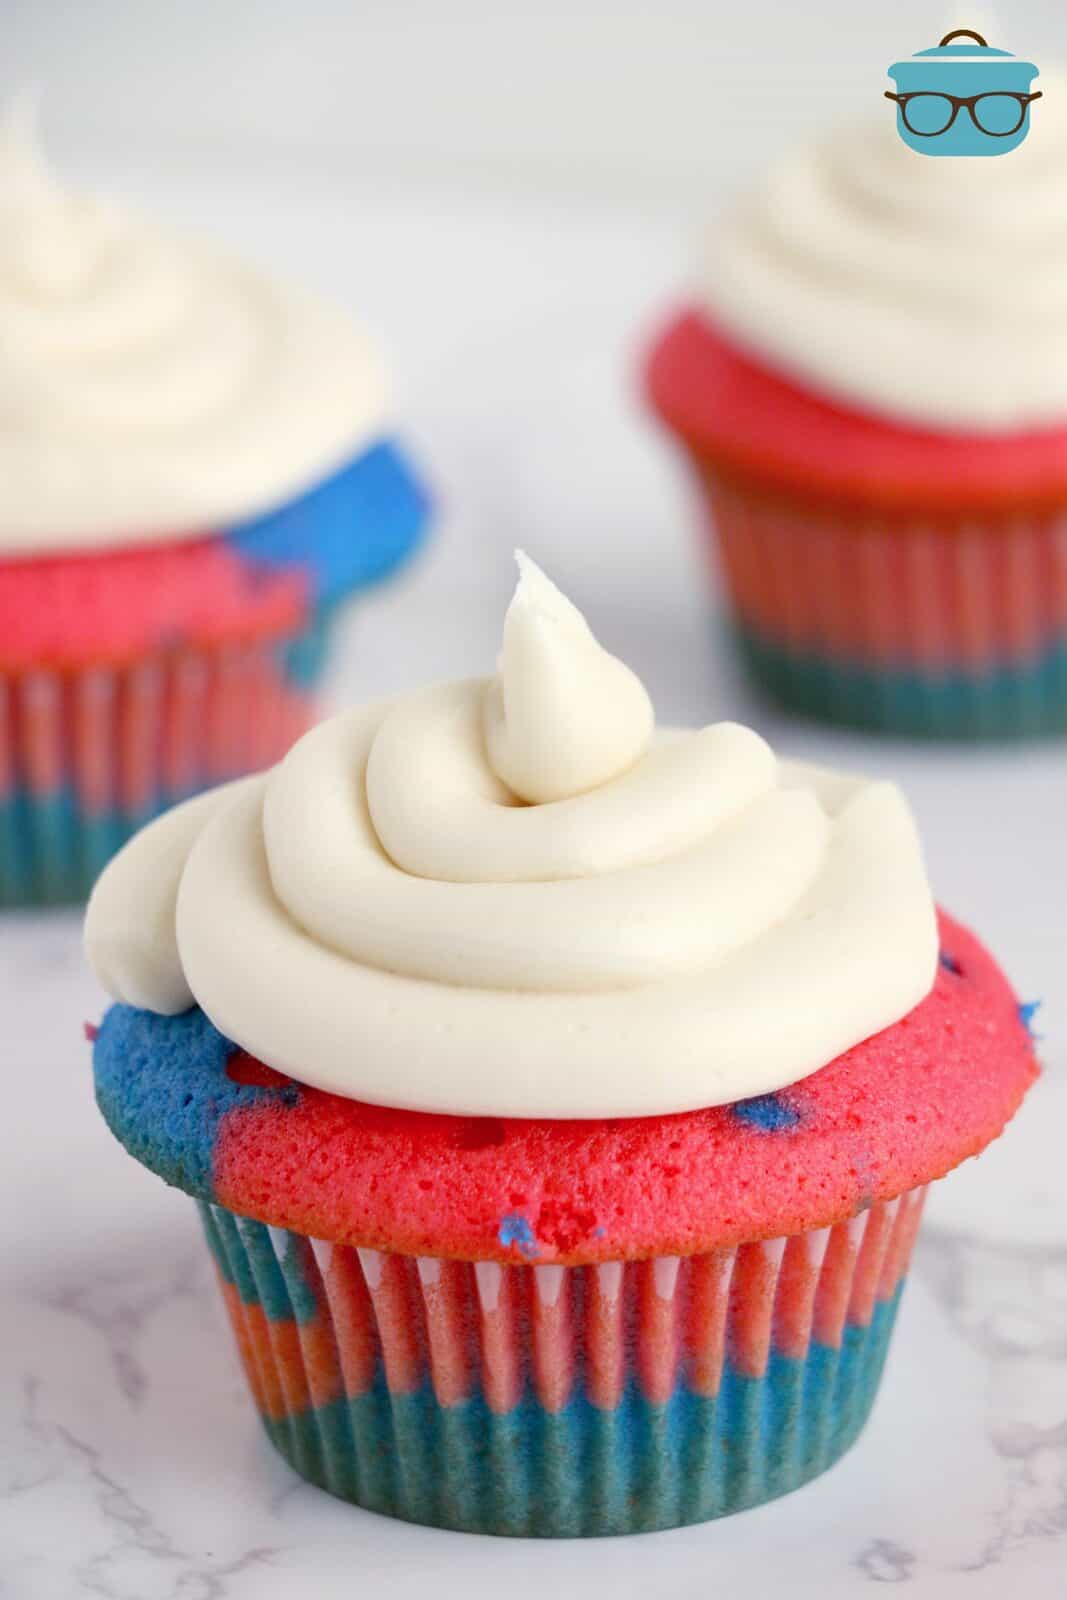 Glassare i cupcakes rossi, bianchi e blu.